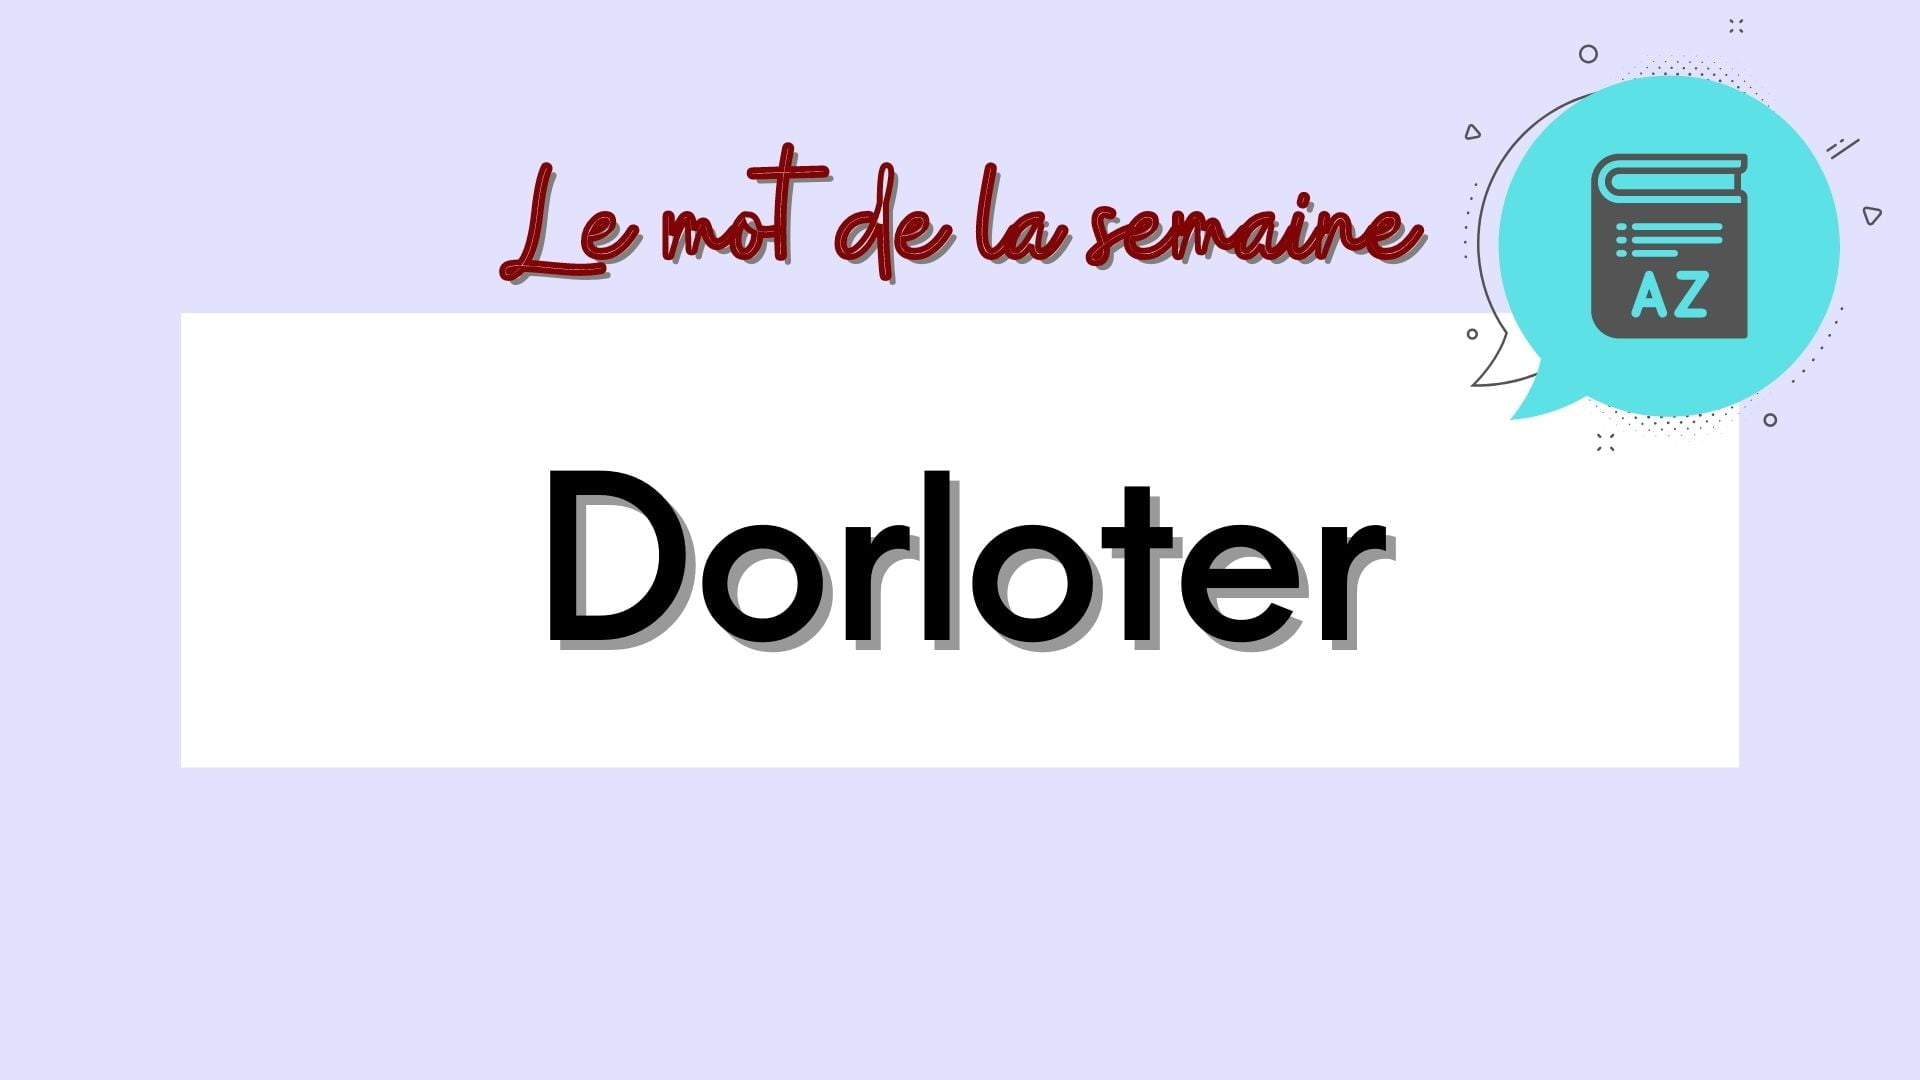 Dorloter in French